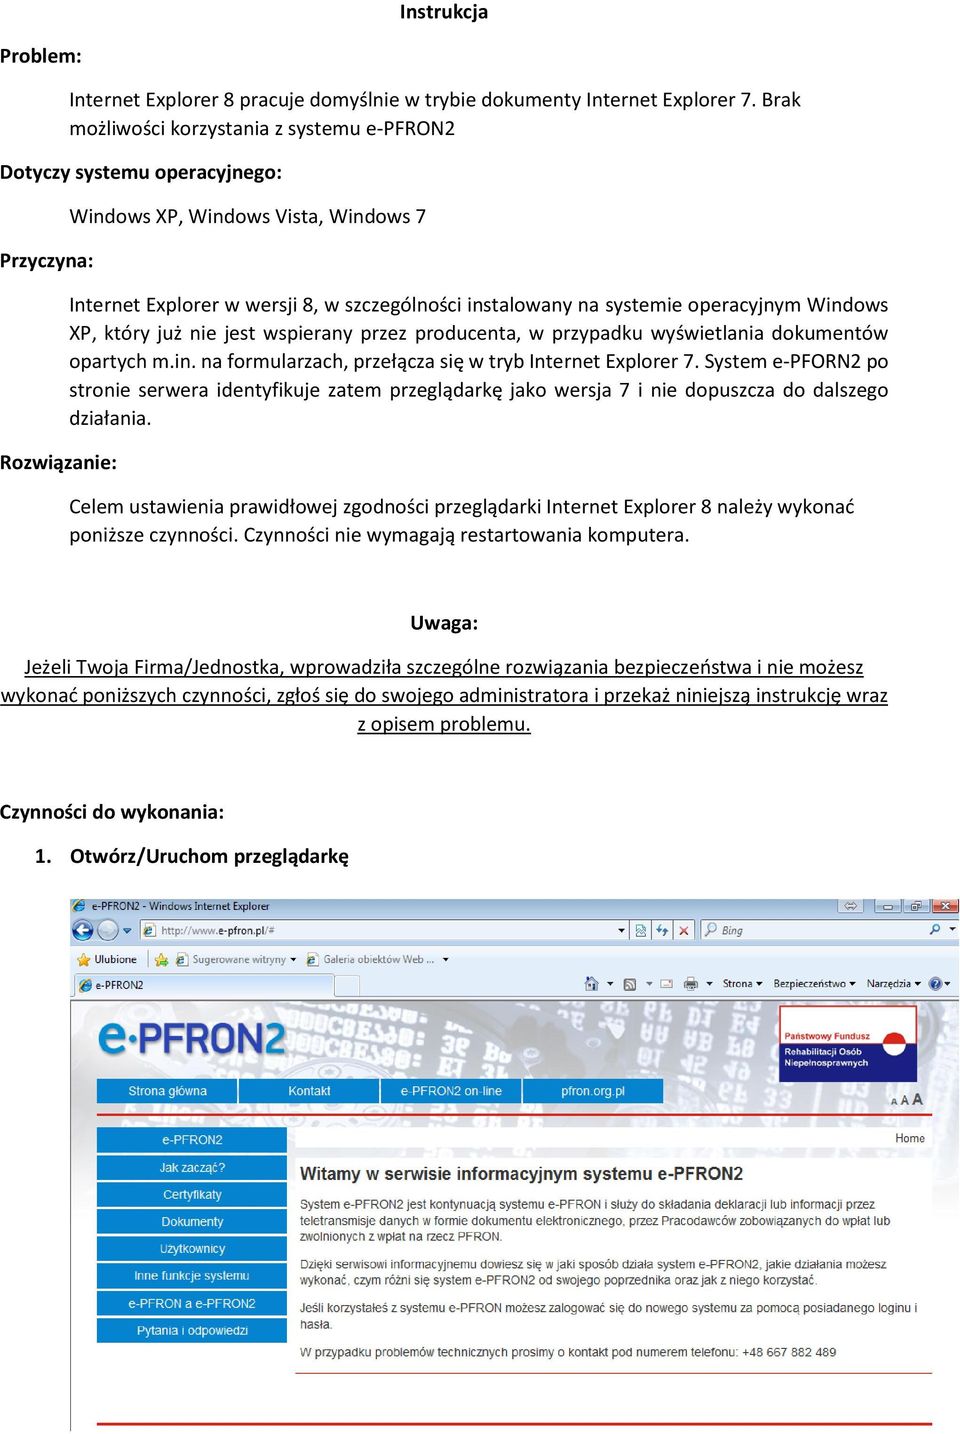 systemie operacyjnym Windows XP, który już nie jest wspierany przez producenta, w przypadku wyświetlania dokumentów opartych m.in. na formularzach, przełącza się w tryb Internet Explorer 7.